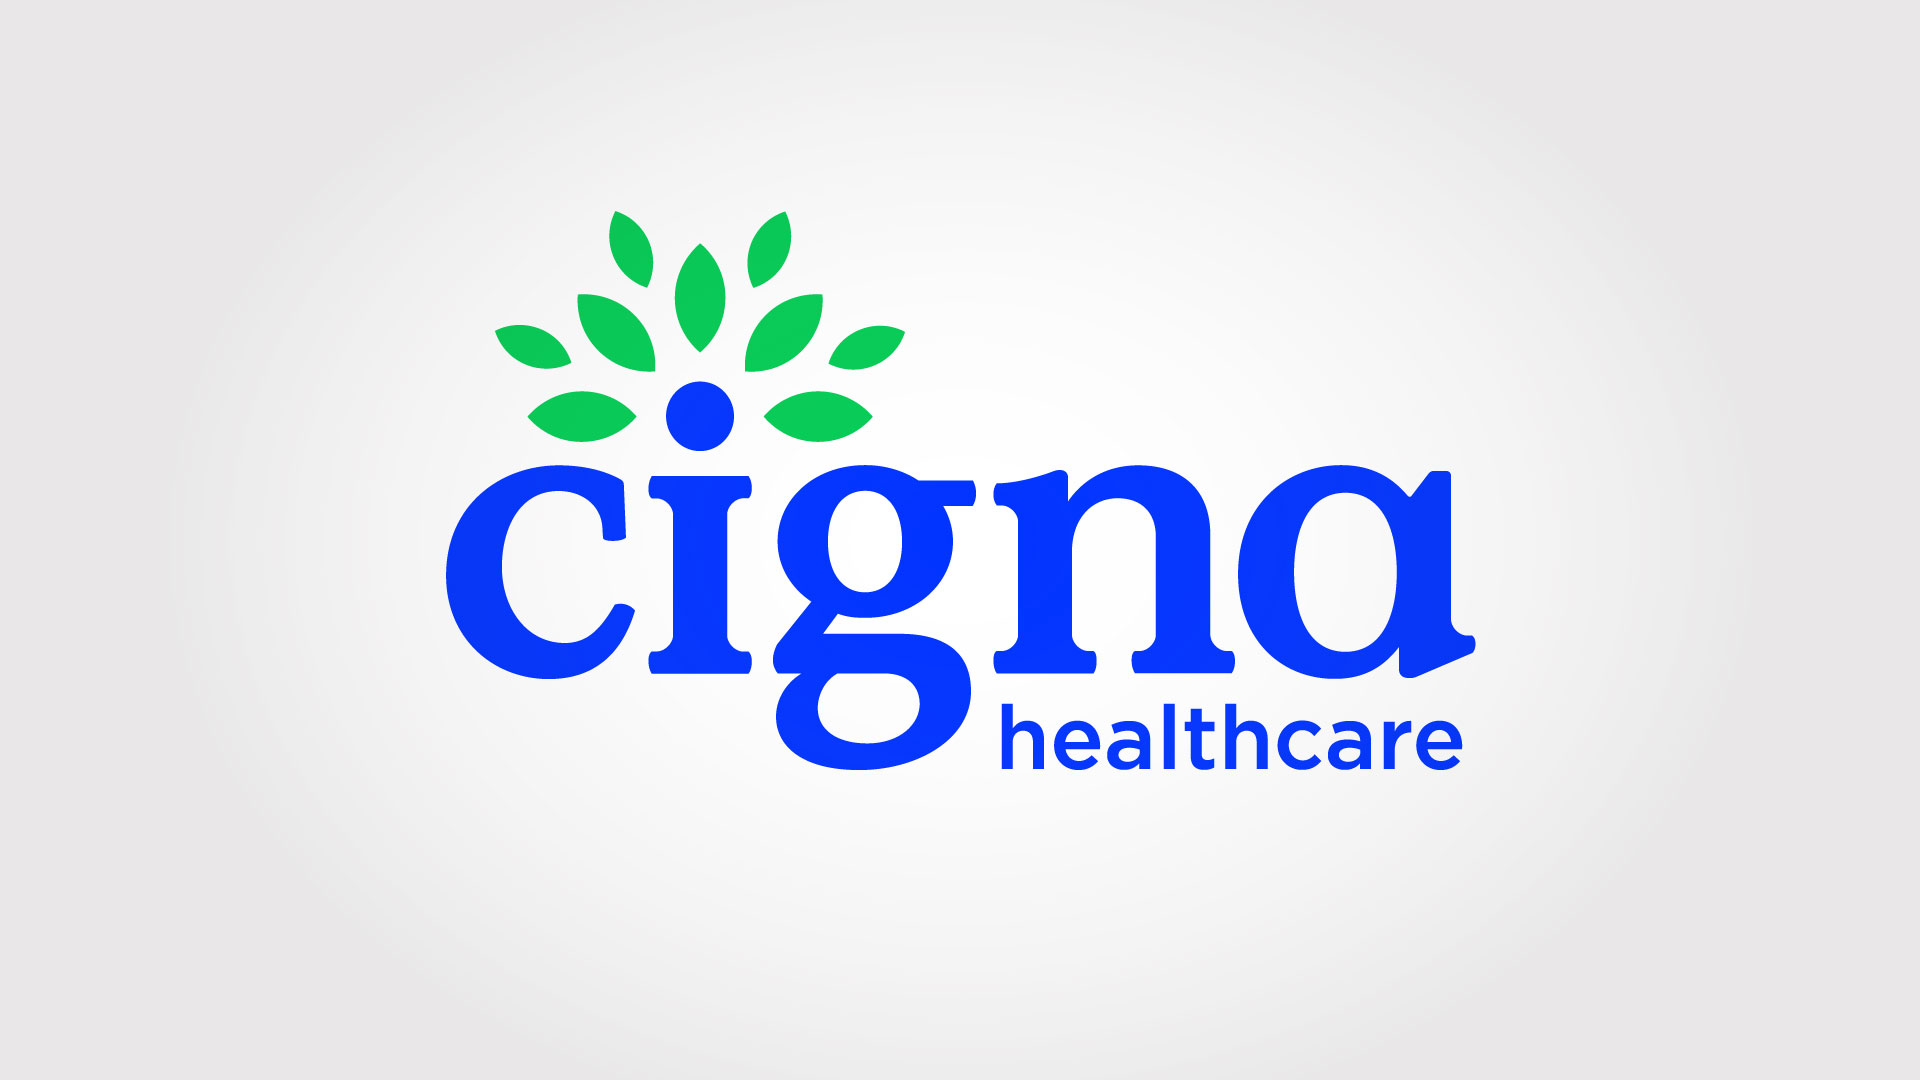 Cigna Healthcare Logo